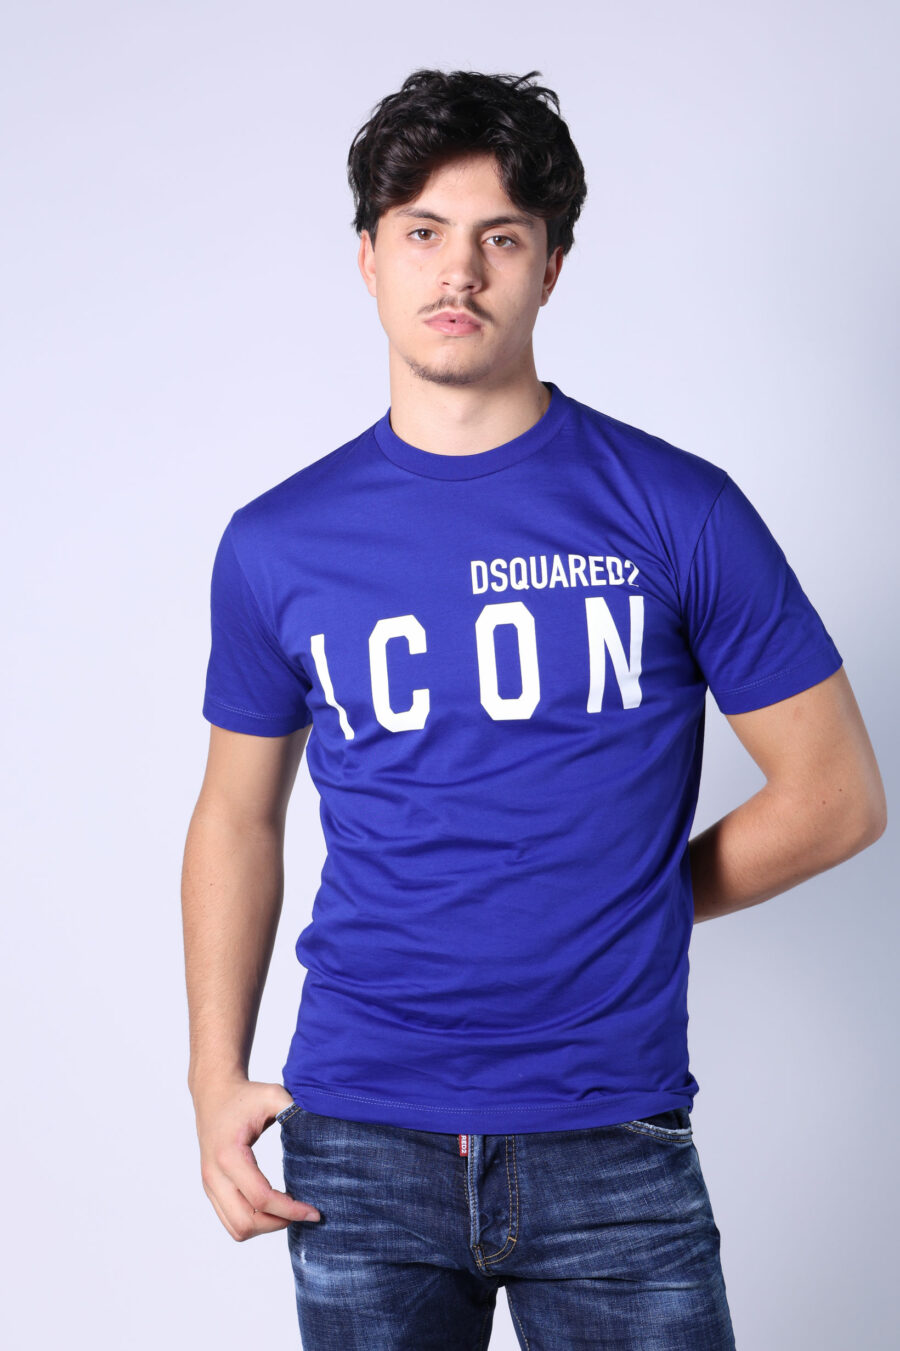 T-shirt bleu électrique avec maxilogo "icon" blanc - Untitled Catalog 05399